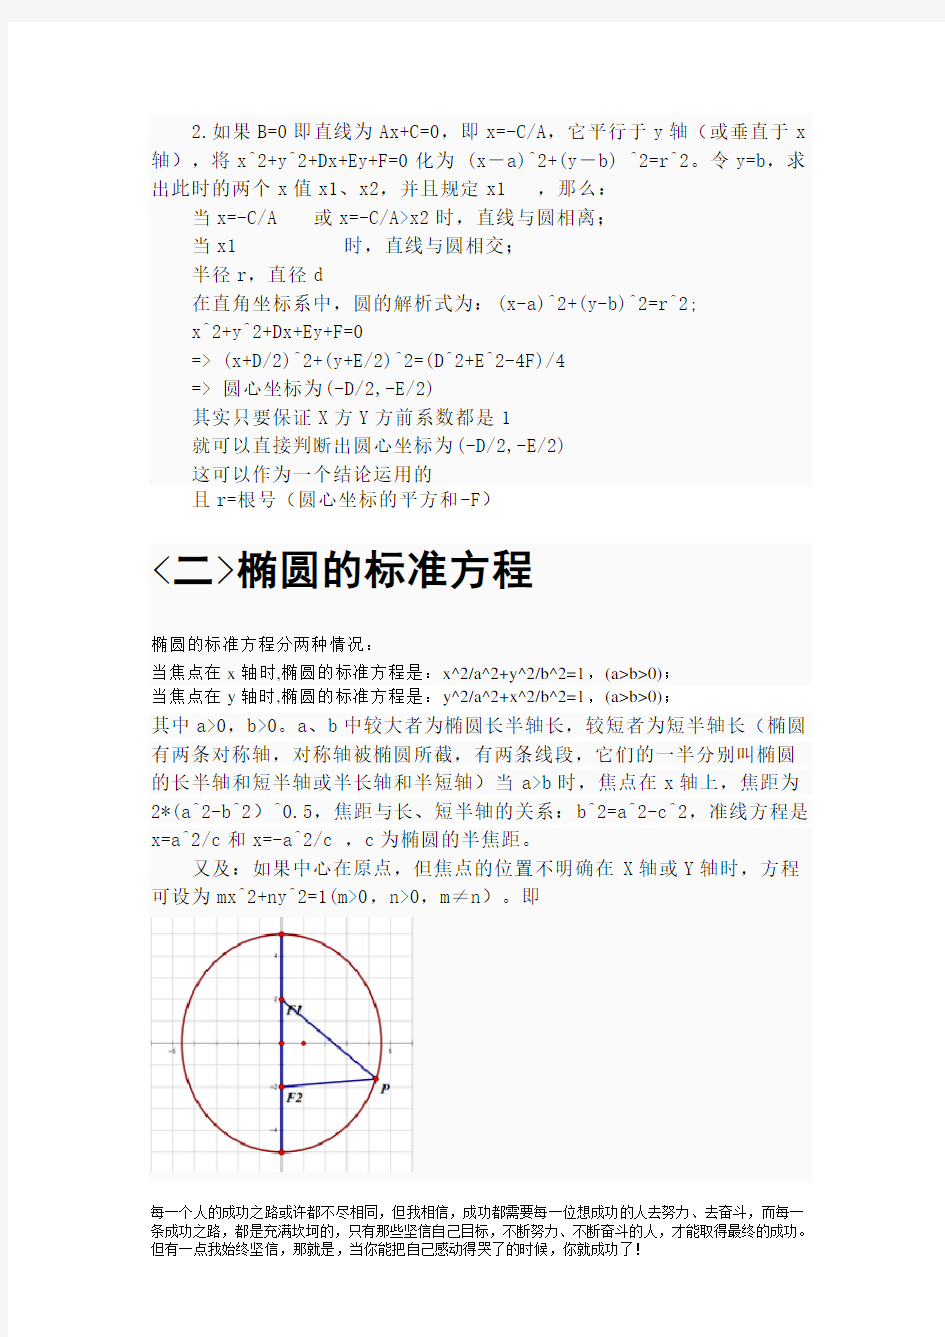 高中数学有关圆-椭圆-双曲线-抛物线的详细知识点